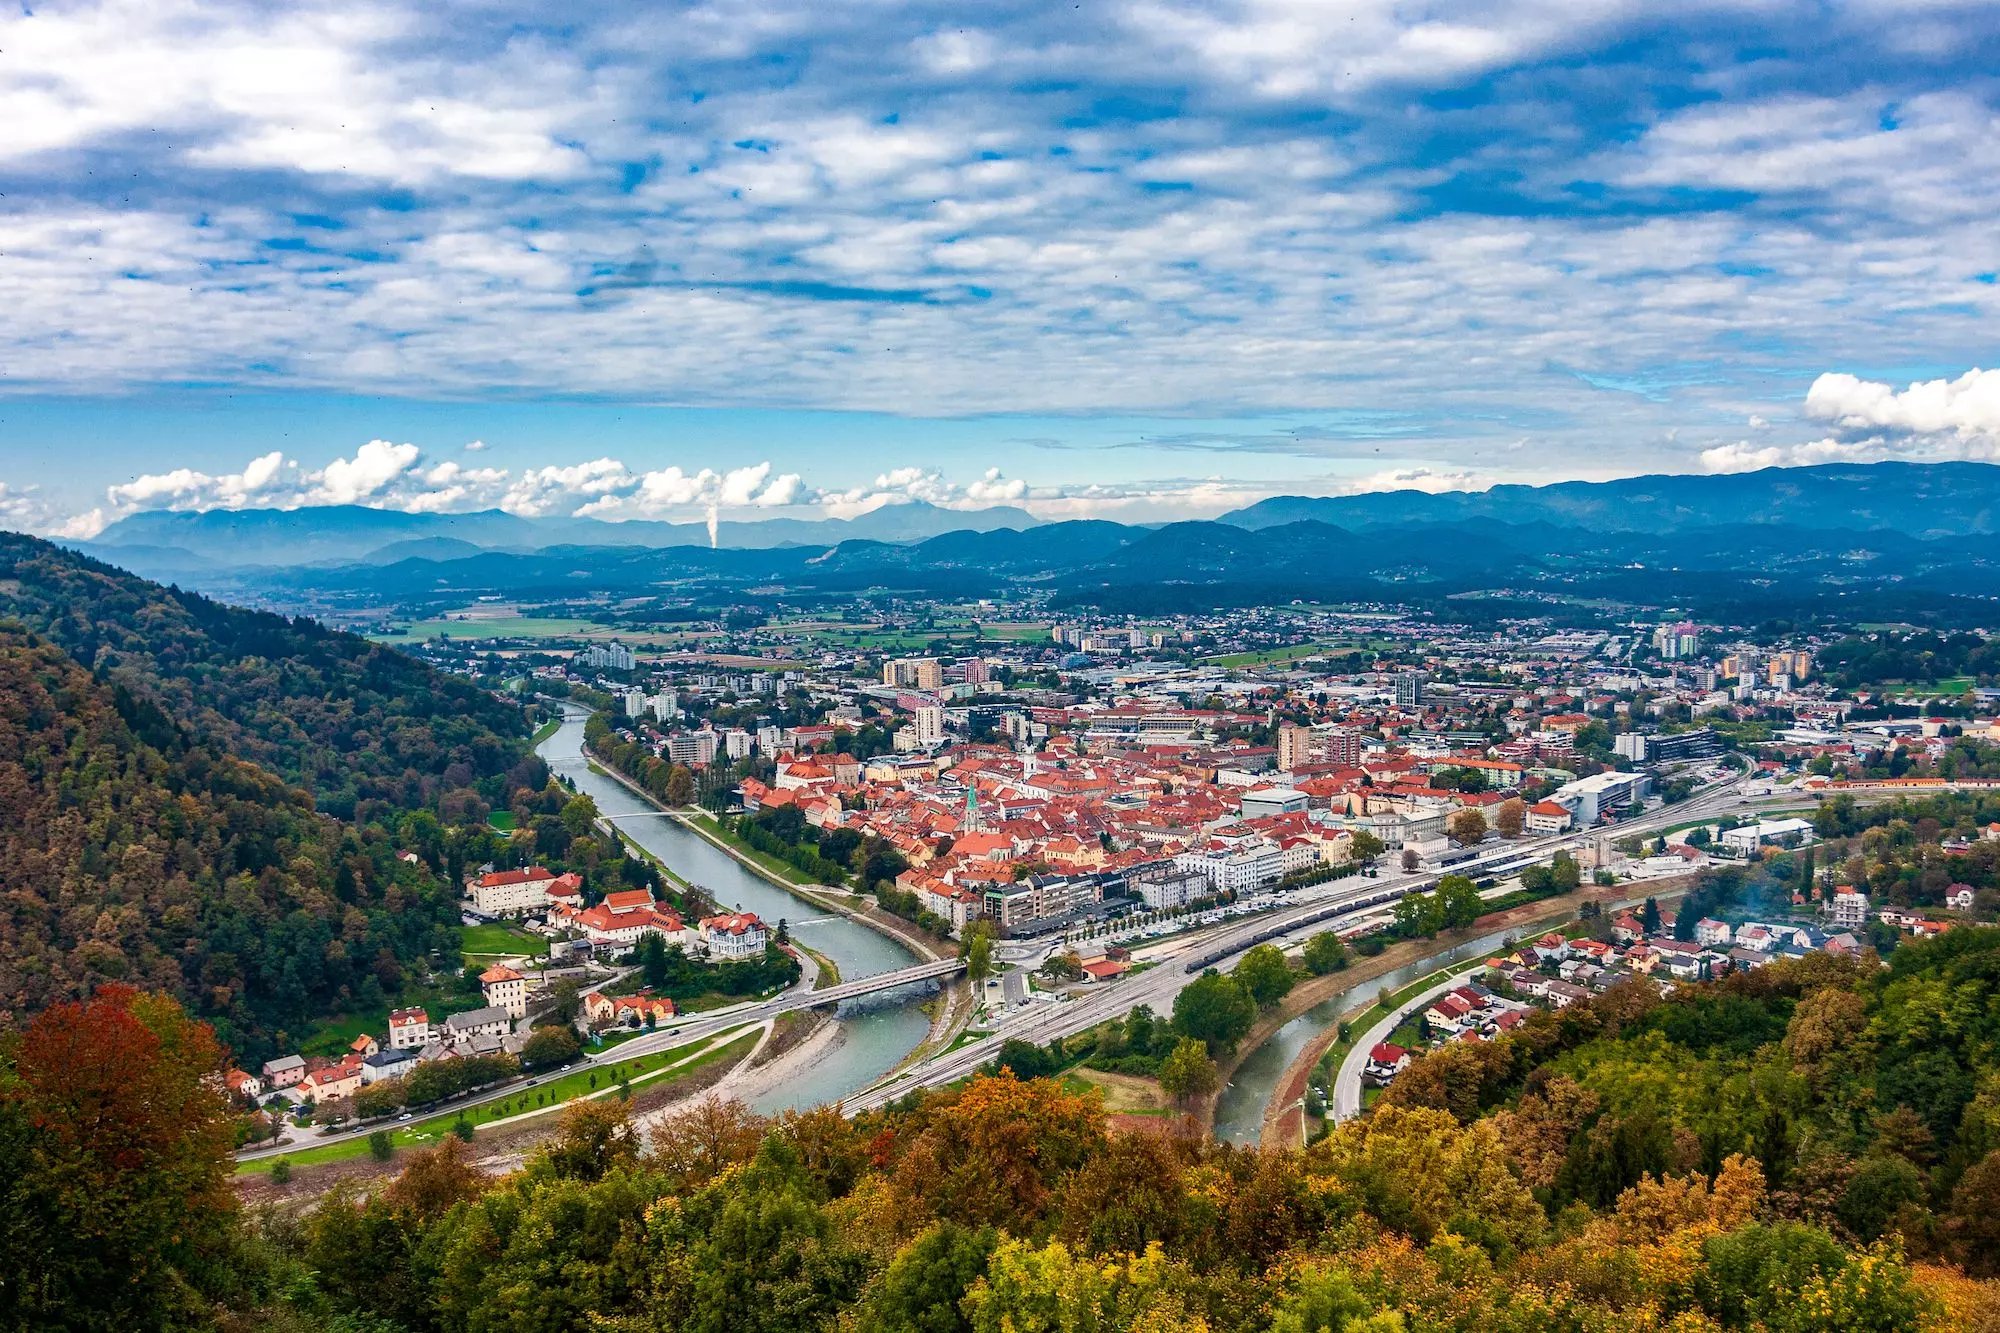 Celje város és környéke (Dezela Celjska) - Szlovénia Kisokos